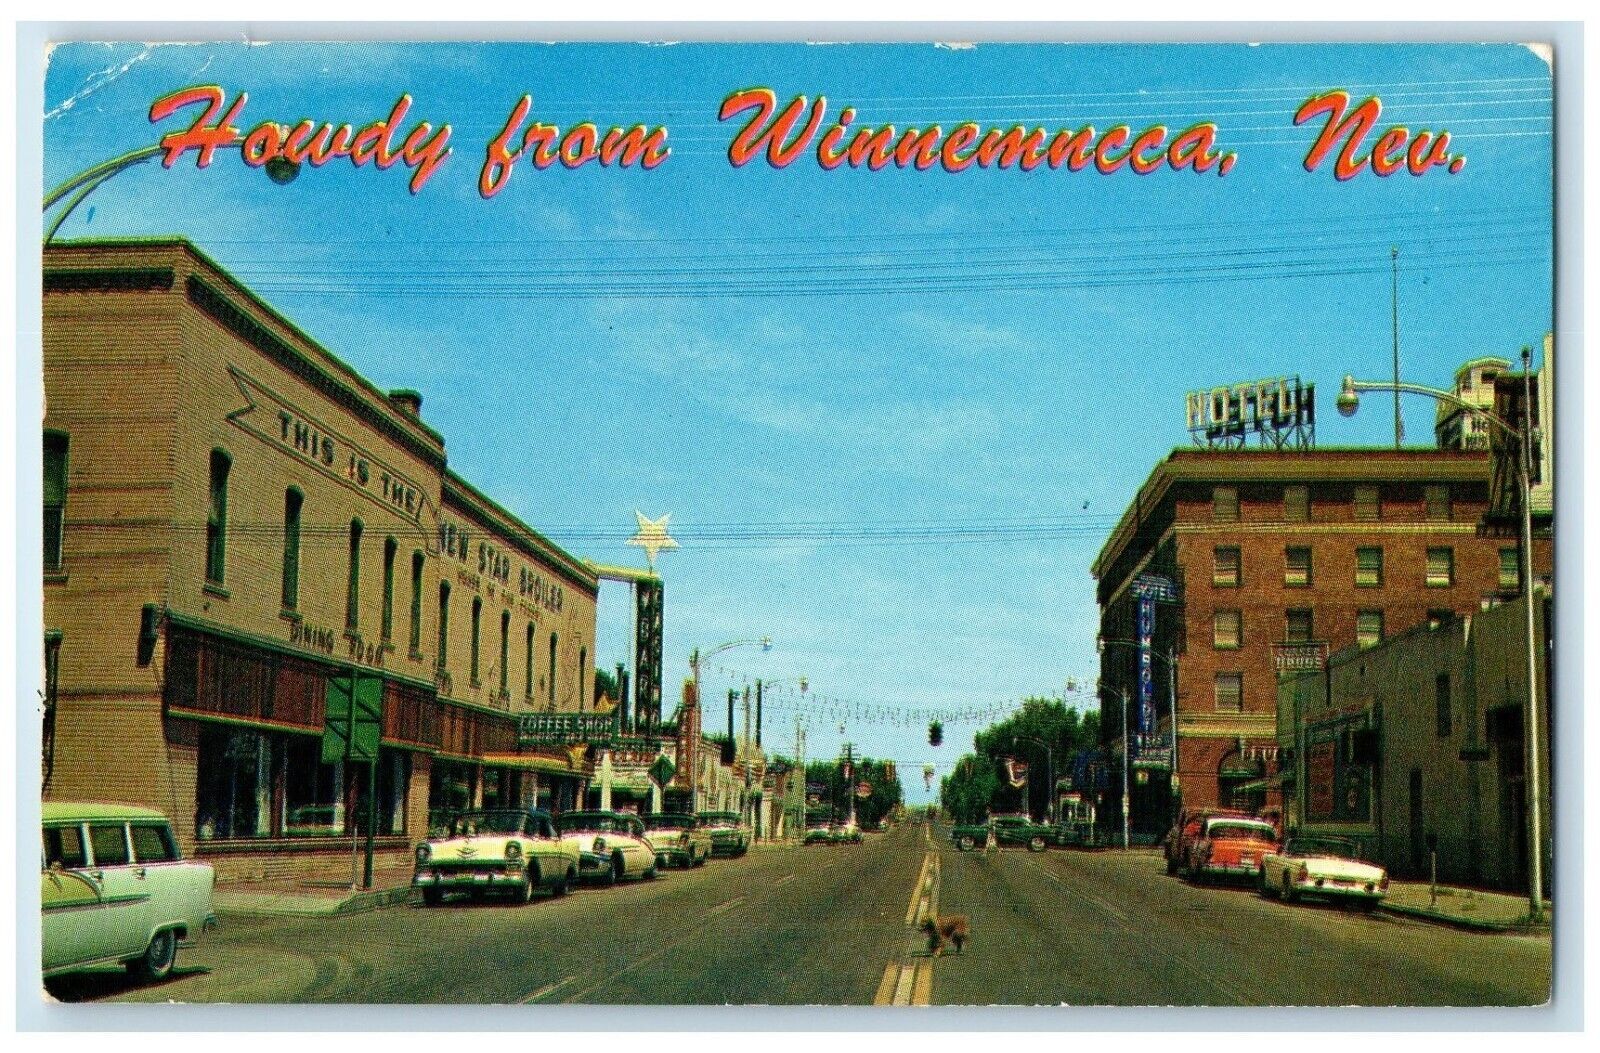 1962 Commercial Center Stockraising Mining Winnemucca Nevada NV Vintage Postcard